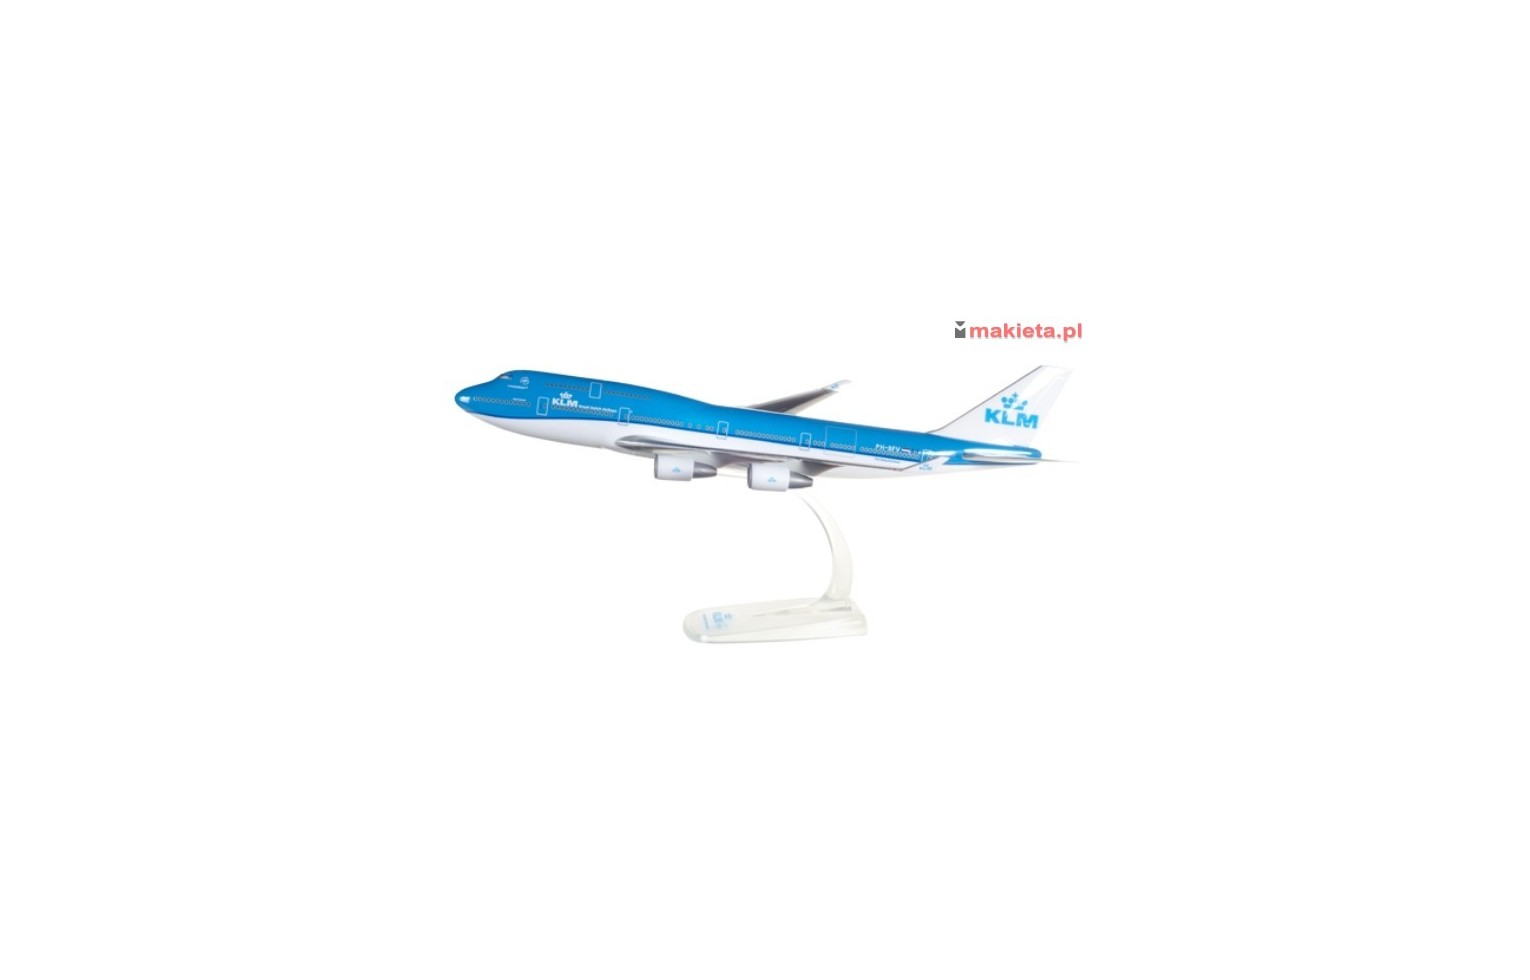 Herpa 611442, KLM Boeing 747-400, skala 1:250